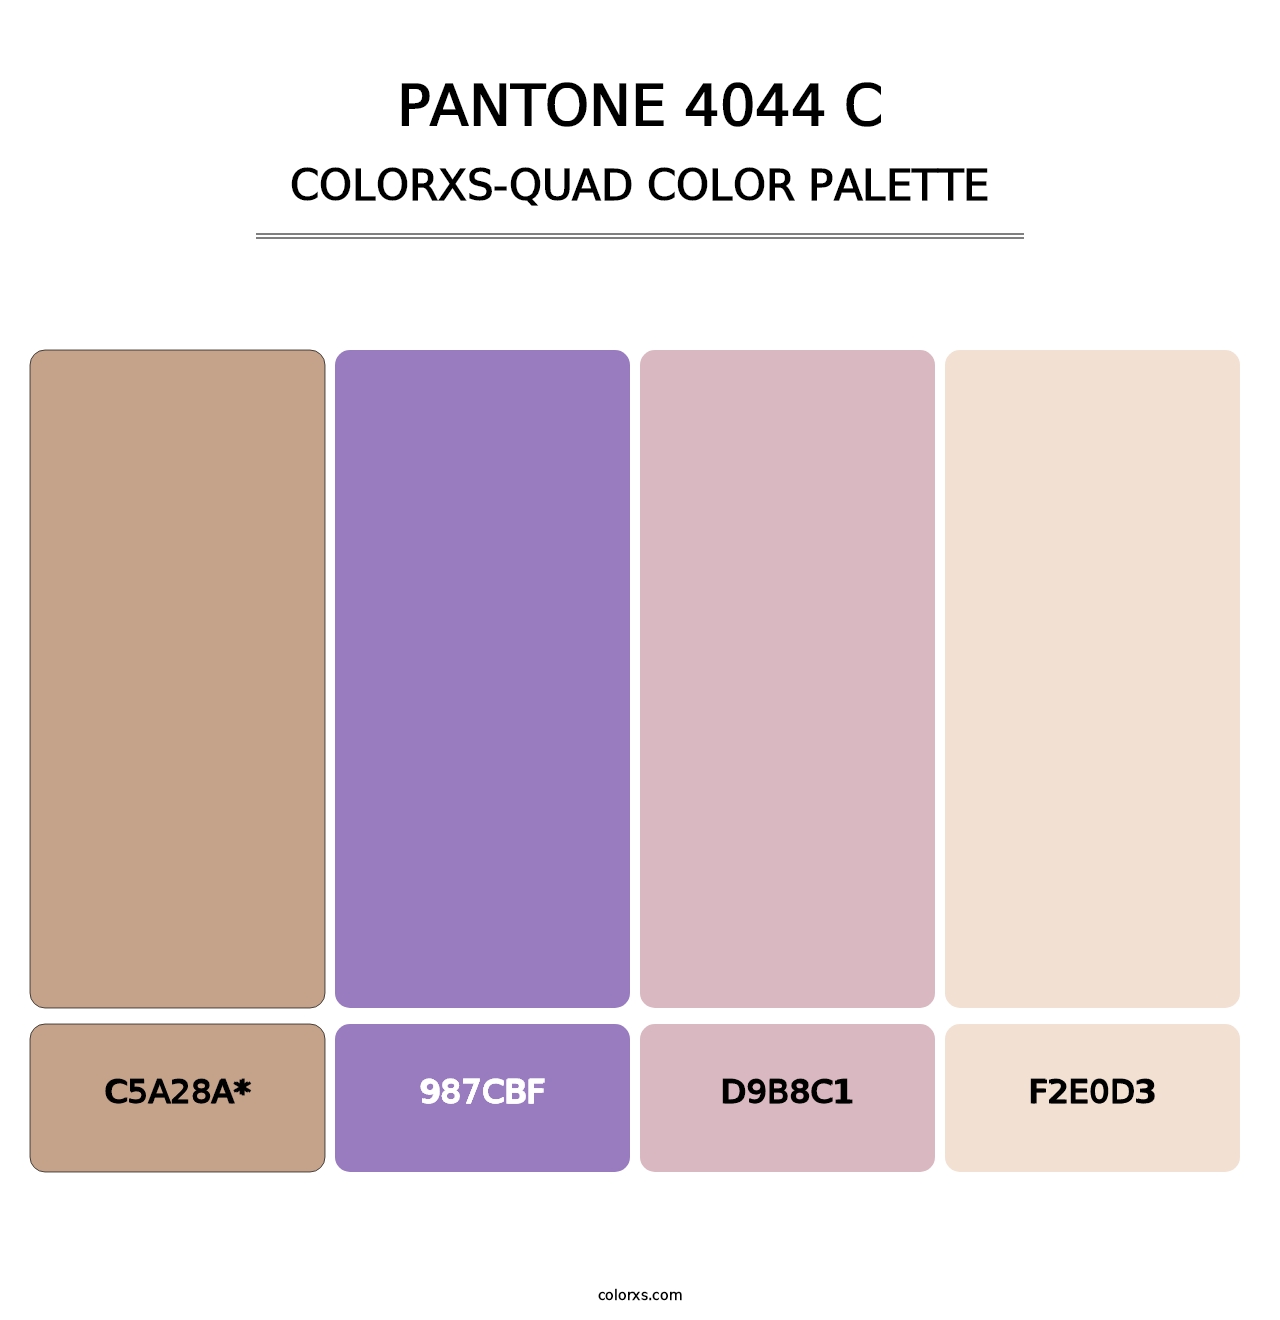 PANTONE 4044 C - Colorxs Quad Palette